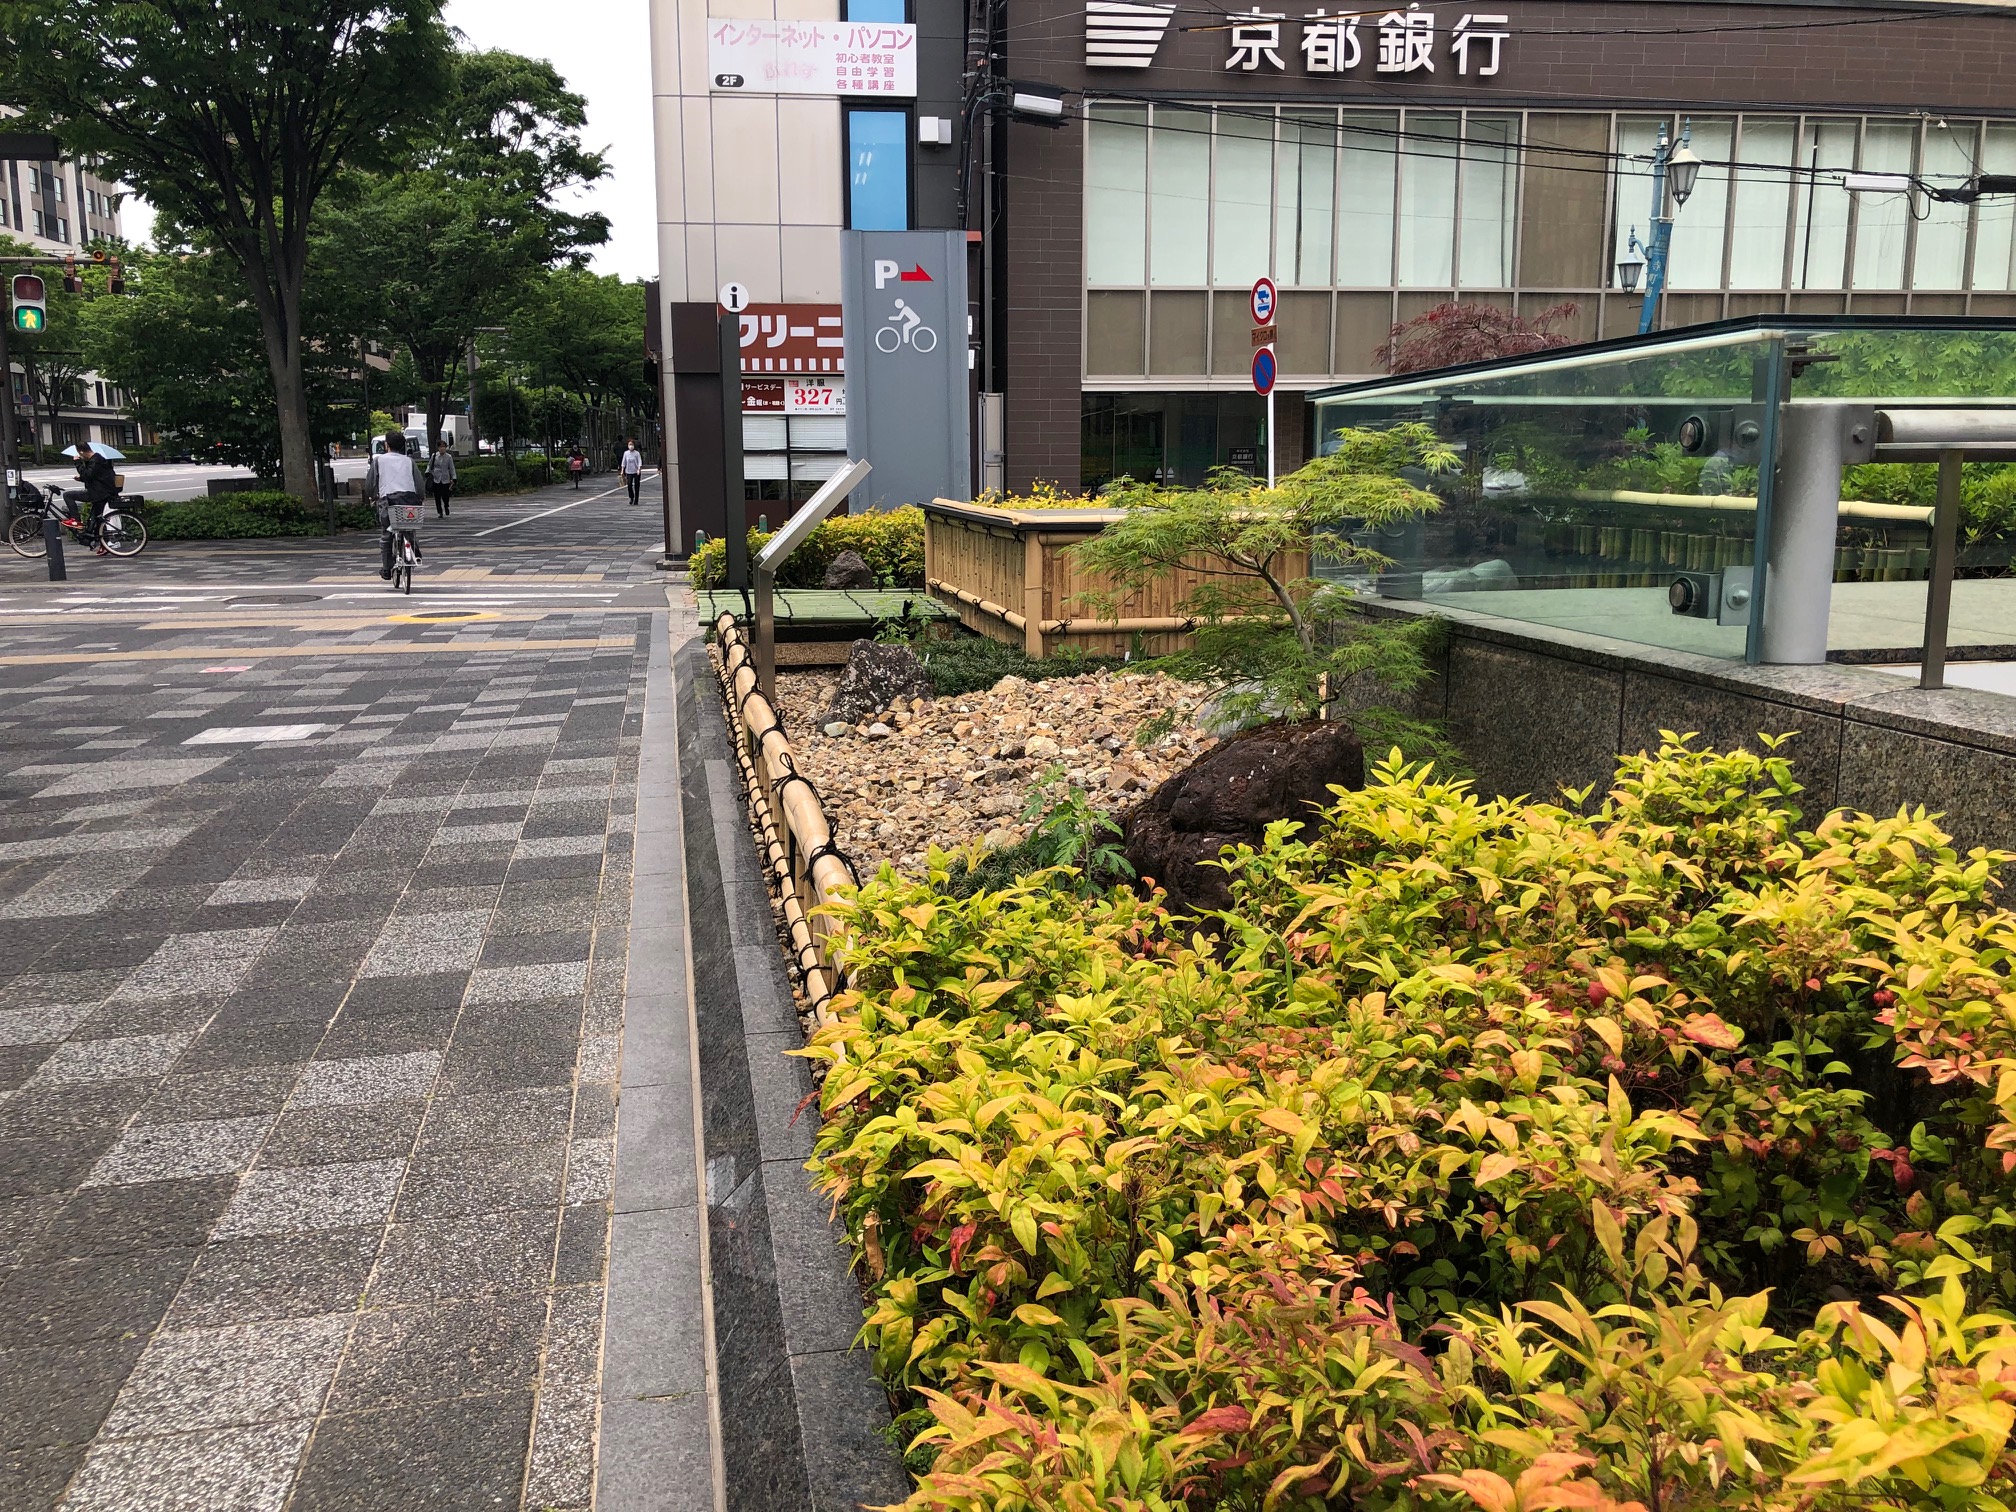 庭園文化と浸水対策を伝える「雨庭」/ 京都市役所前に雨庭構造見本庭園完成